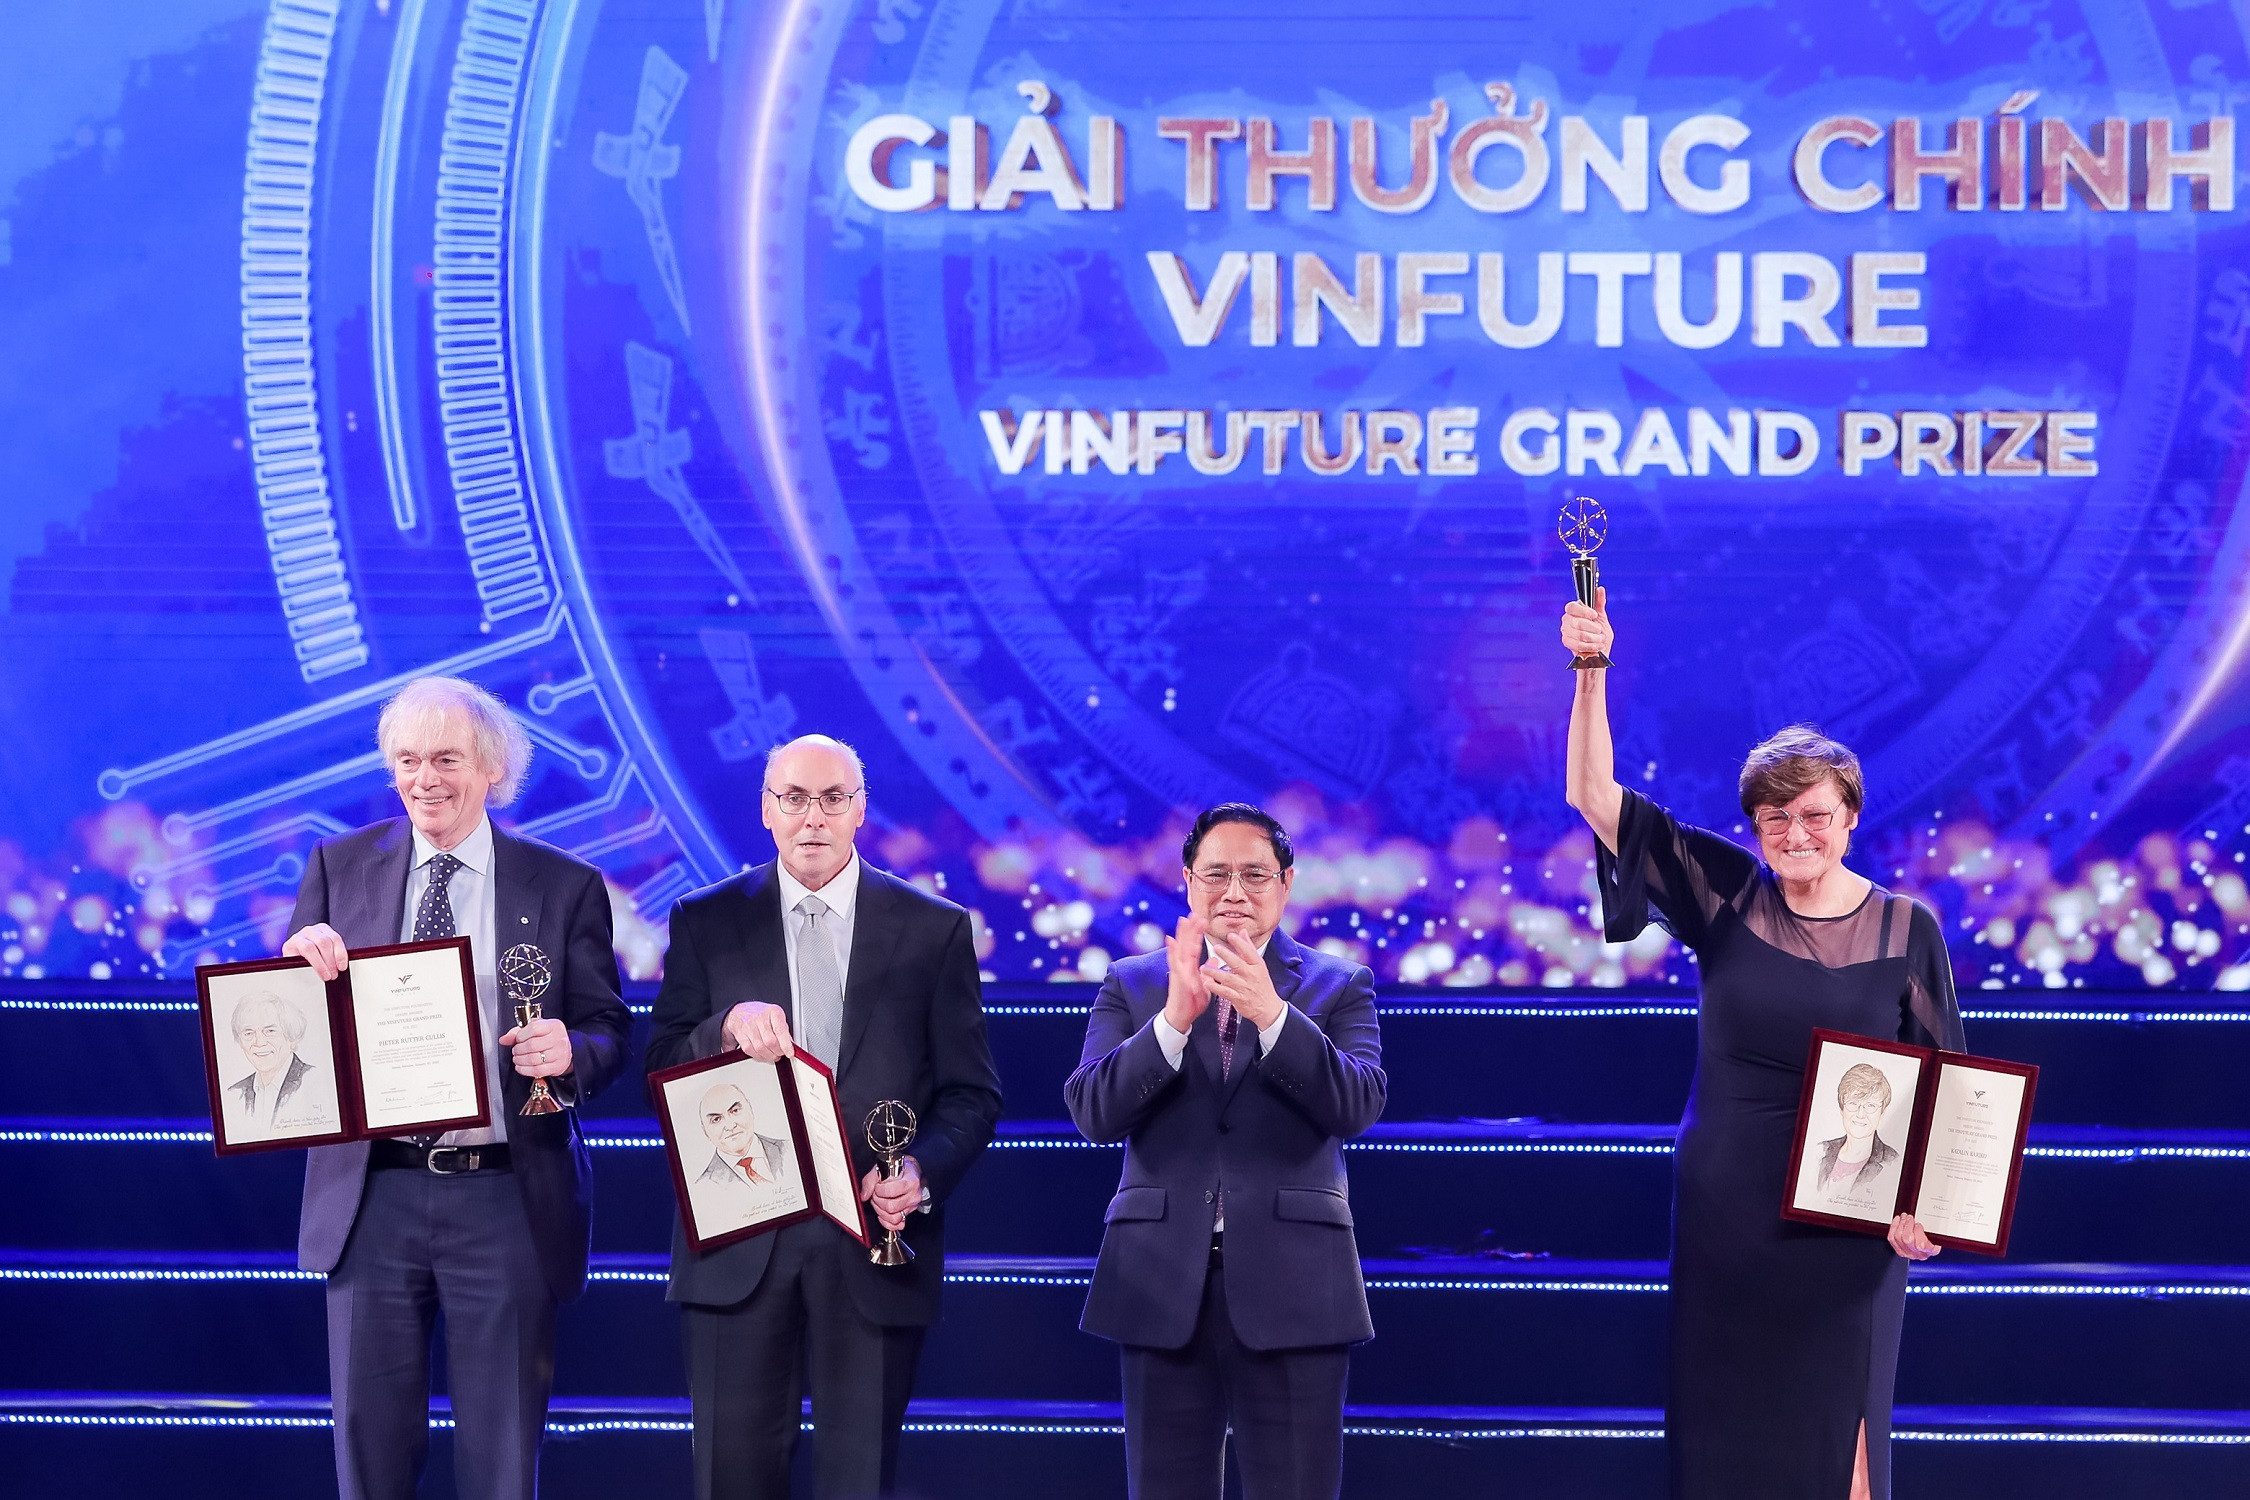 Chủ nhân giải thưởng chính VinFuture tiếp tục được trao giải Nobel-1